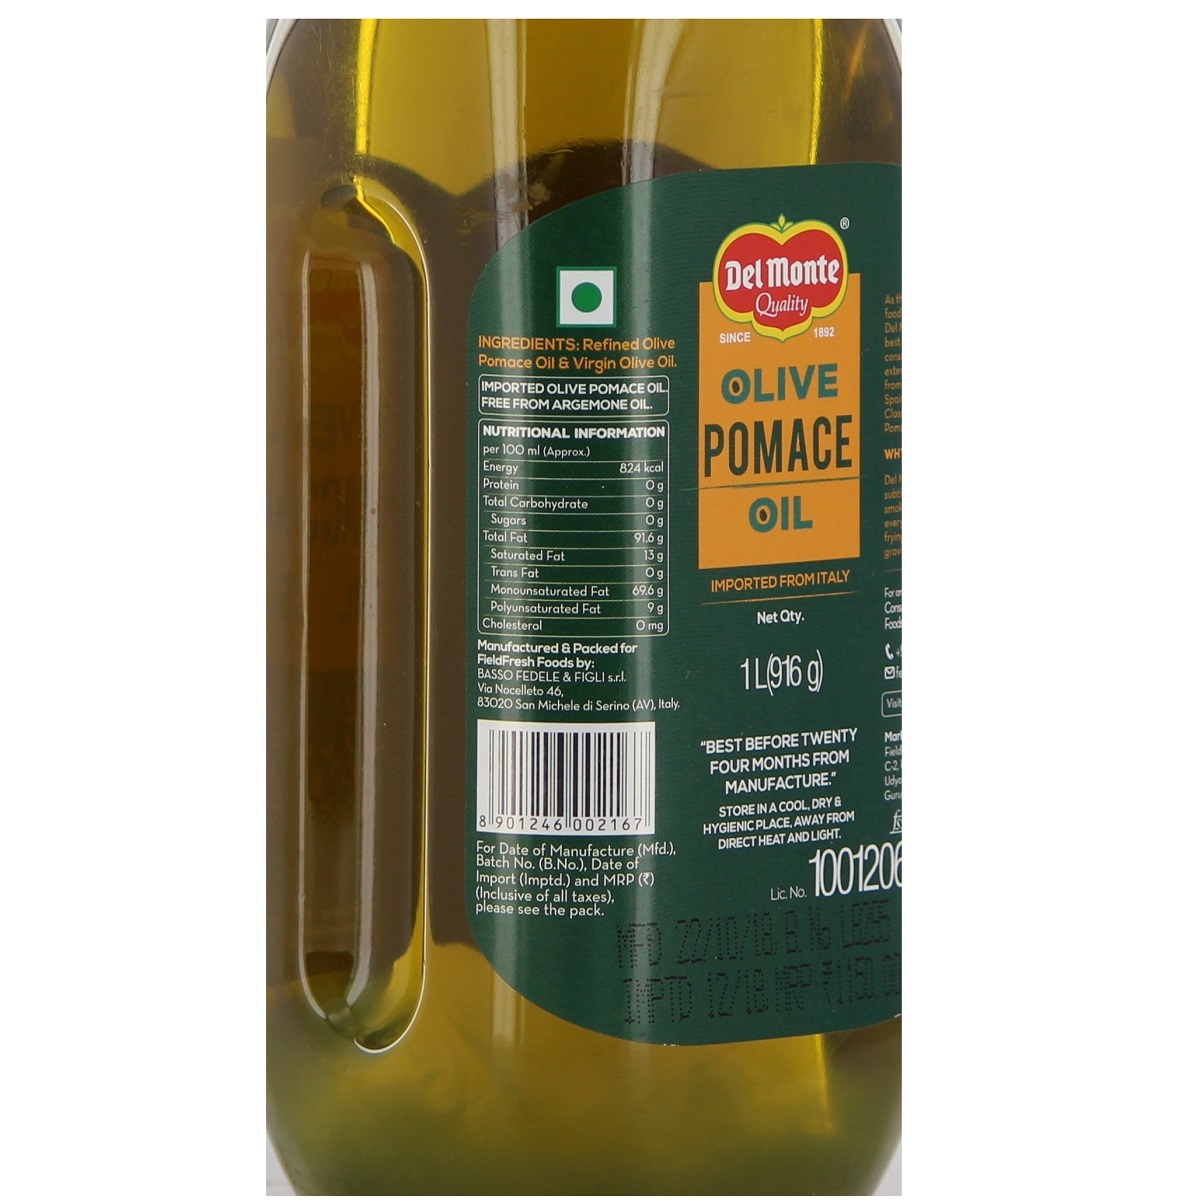 Delmonte Quality Olive Oil Pomace 1Litre